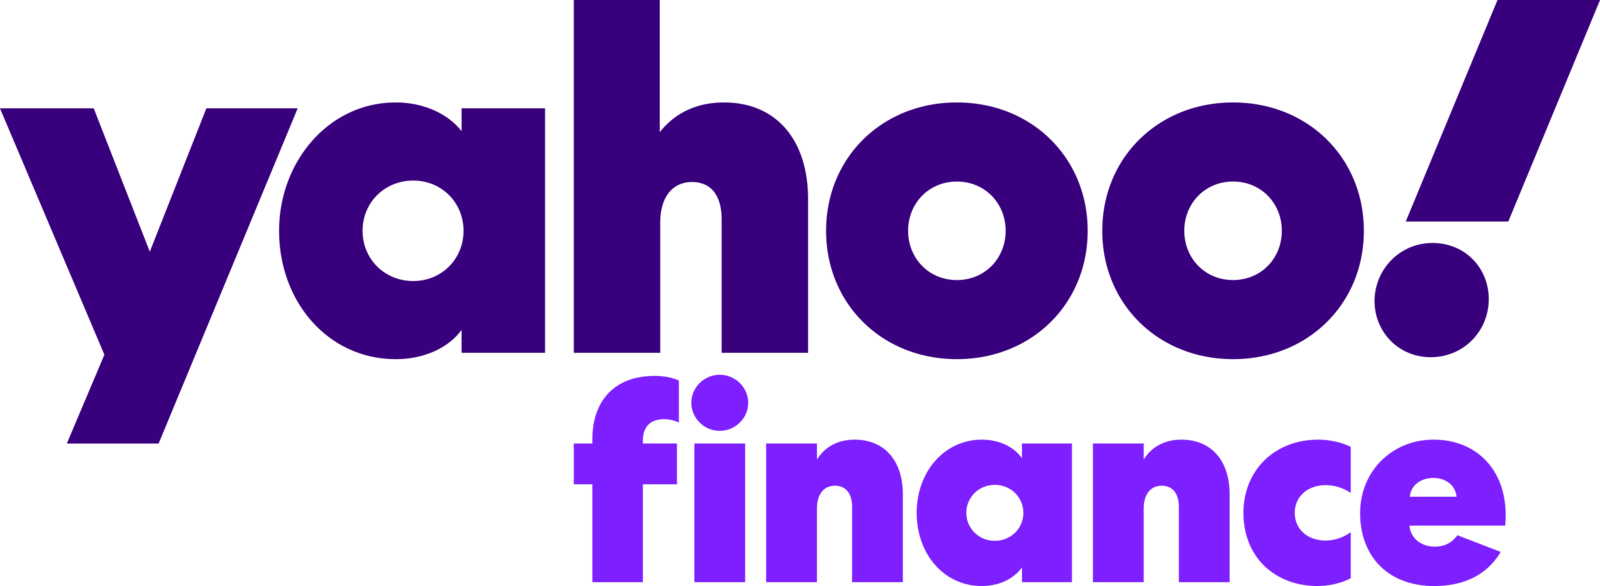 Yahoo__Finance_logo_2021